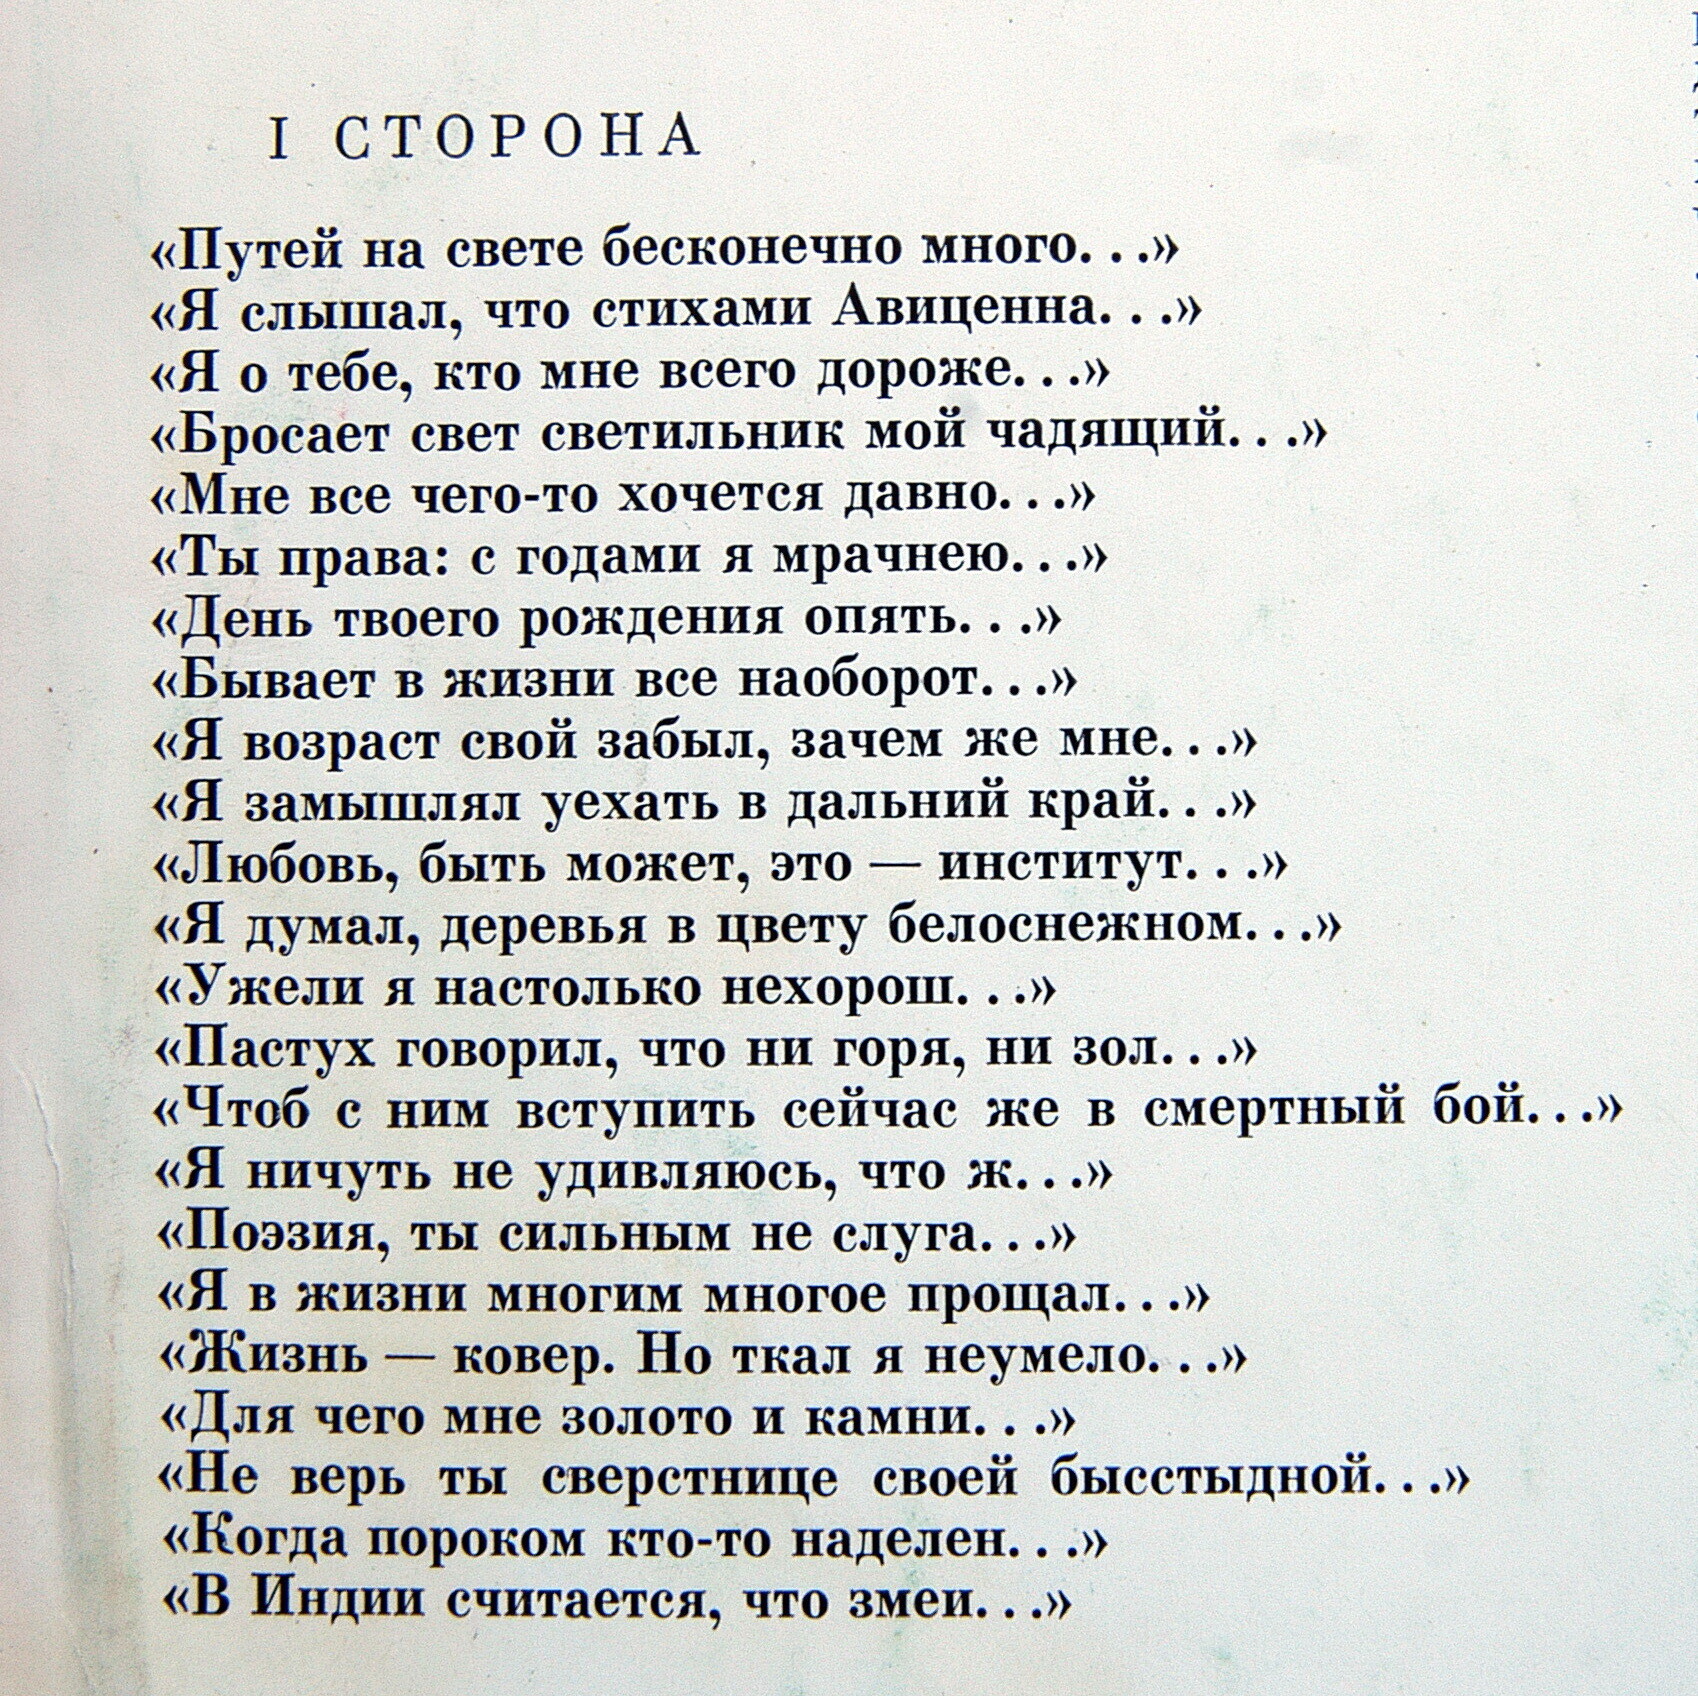 Р. ГАМЗАТОВ (1923): Сонеты и восьмистишия (переводы Н. Гребнева). М. Ульянов